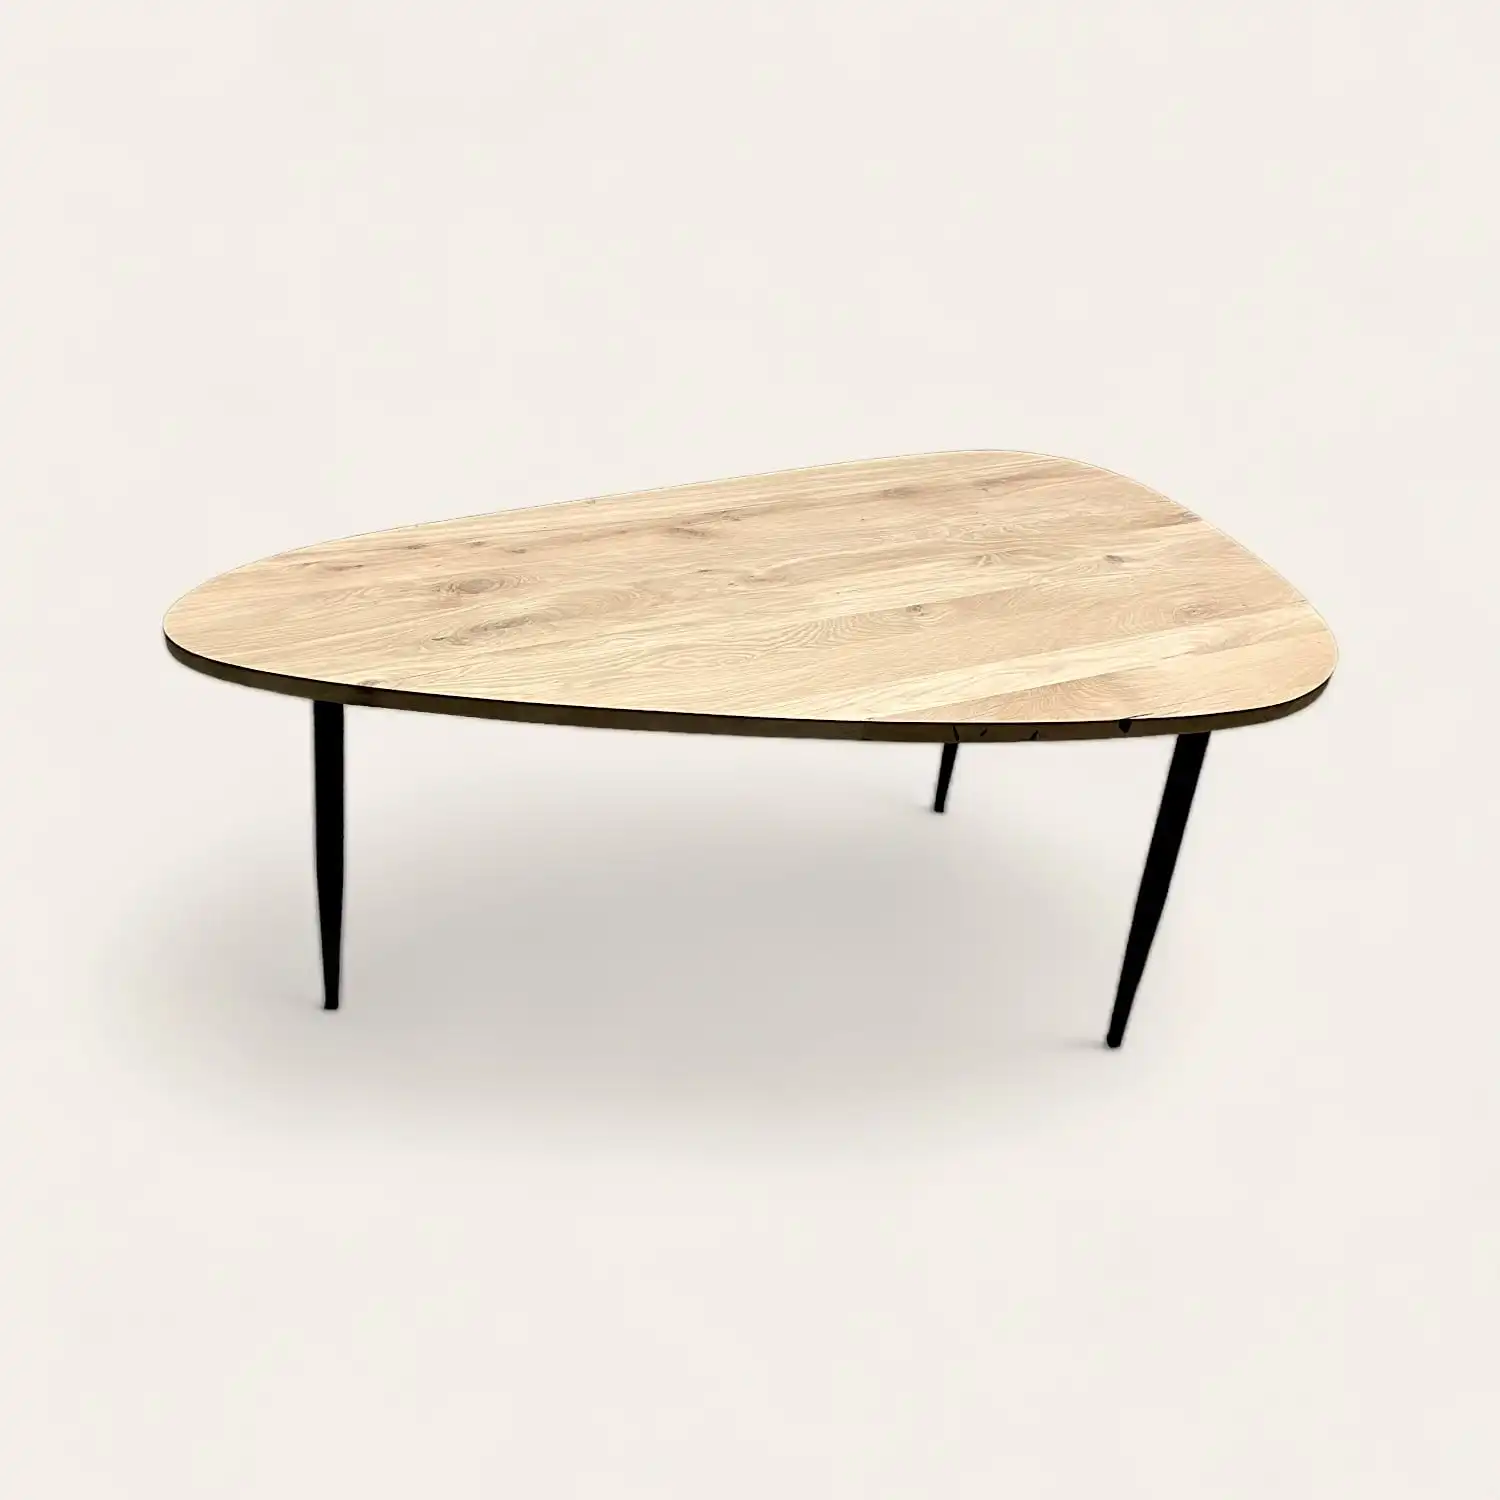  Une petite table en vieux bois avec des pieds noirs sur fond blanc. 